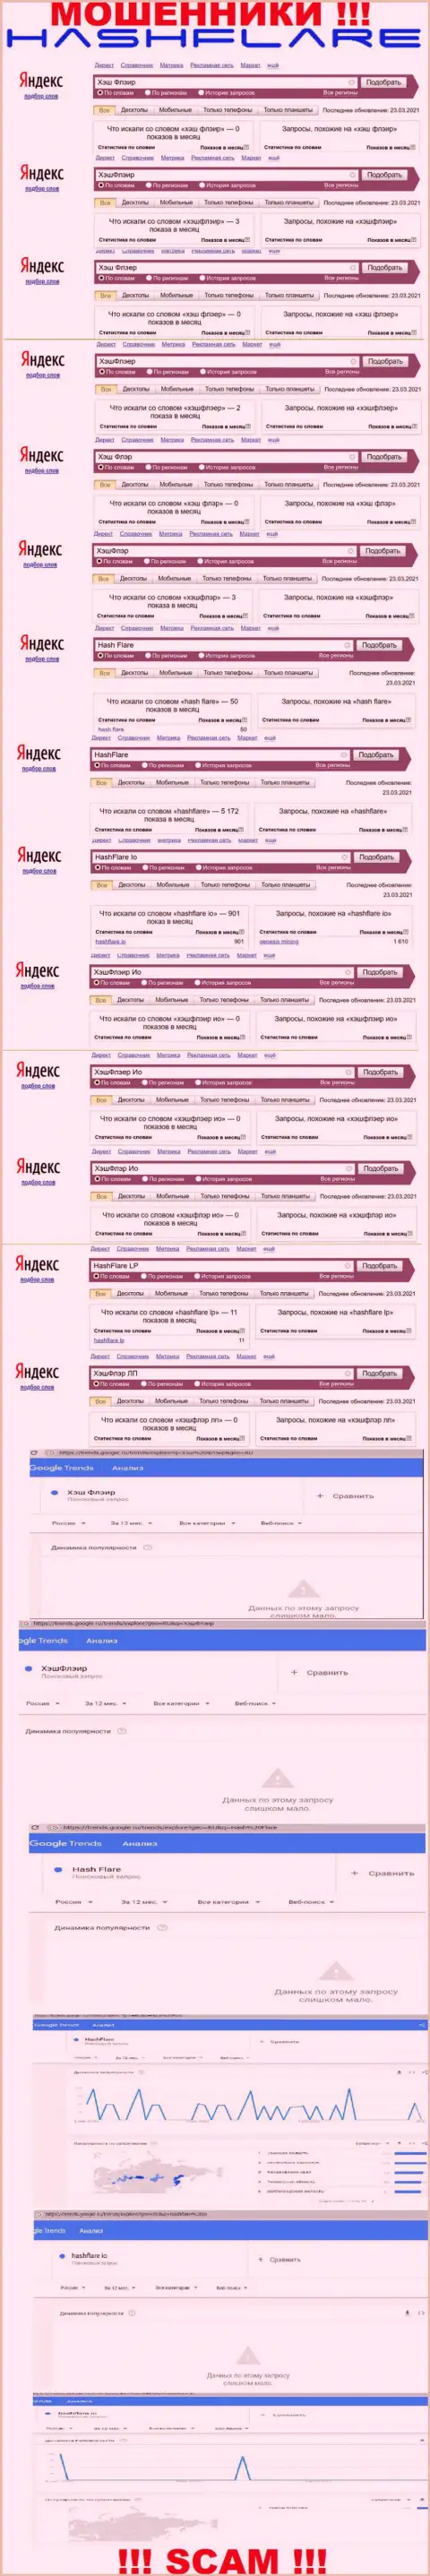 Количество запросов в поисковиках всемирной интернет сети по бренду мошенников Hash Flare